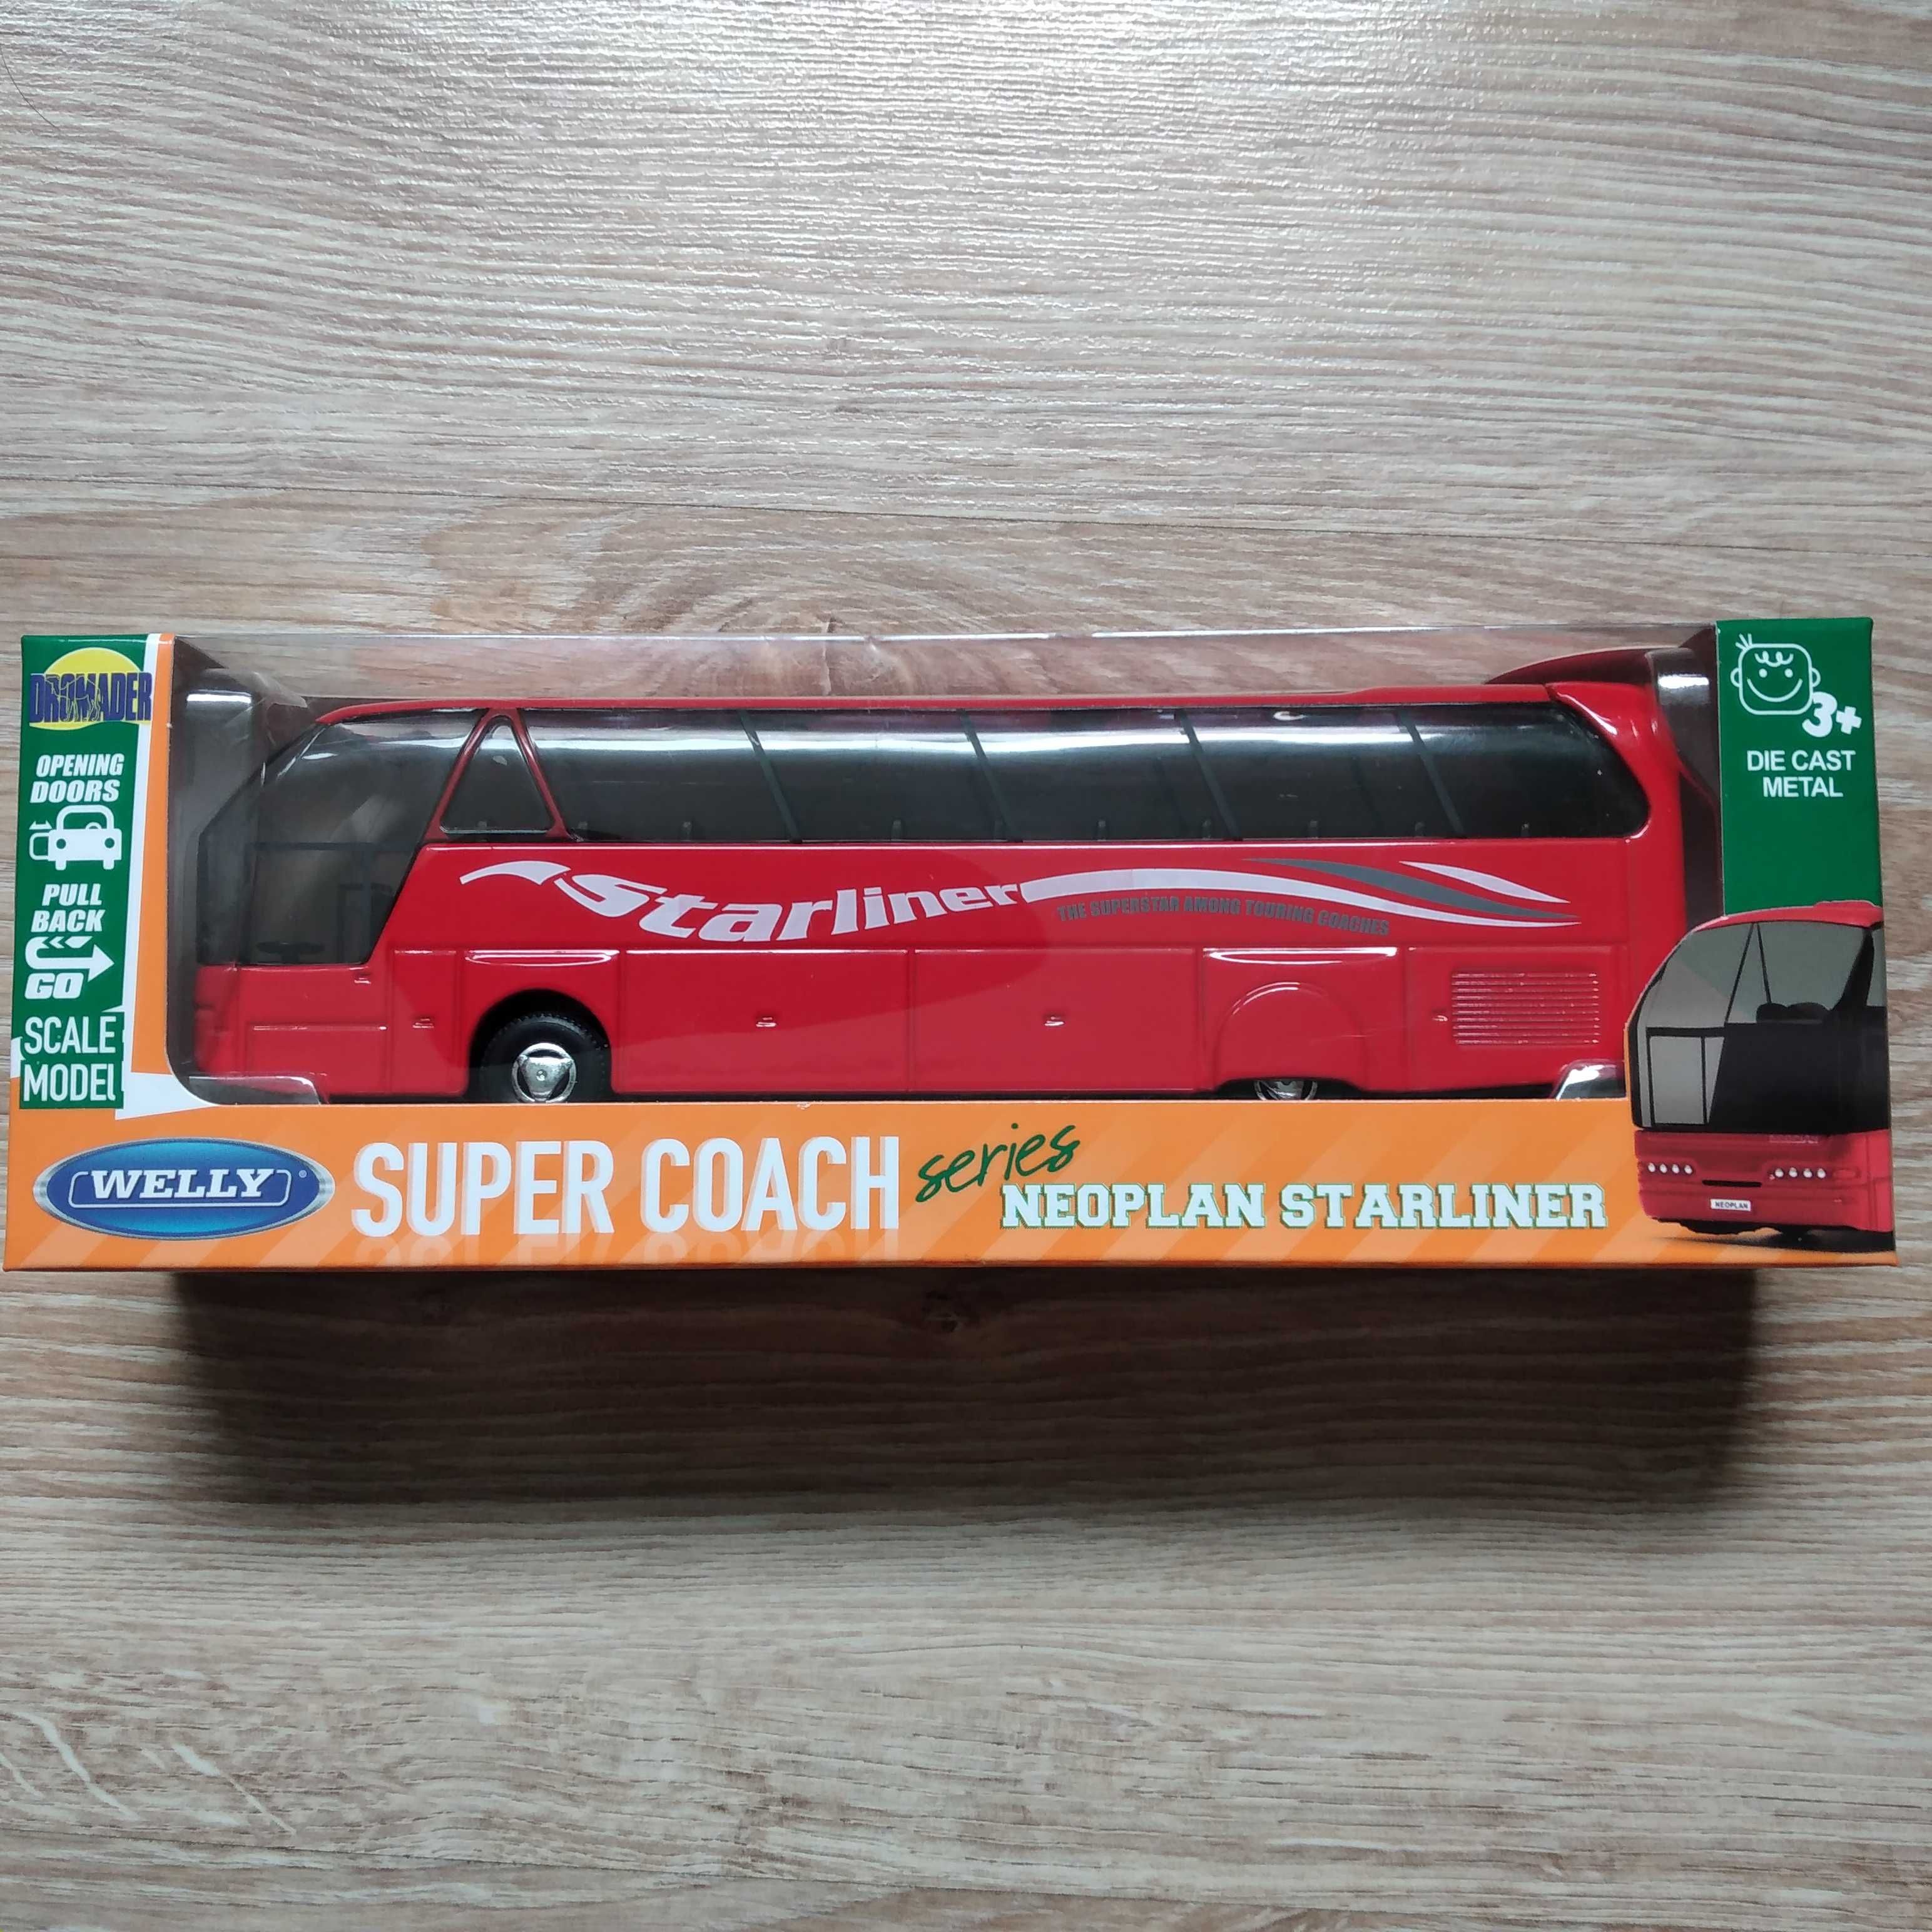 Sprzedam NOWY autobus zabawka Neoplan Starliner pojazd czerwony 1:64